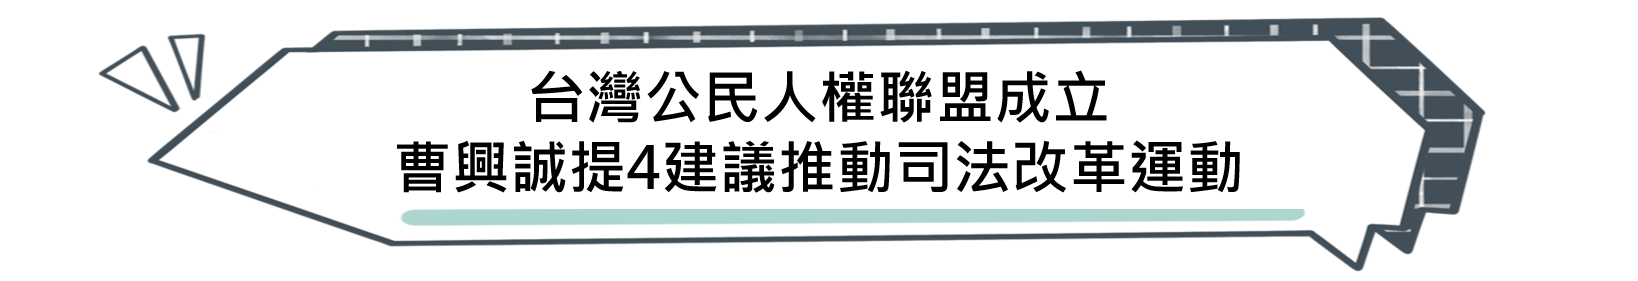  台灣公民人權聯盟成立 曹興誠提4建議推動司法改革運動